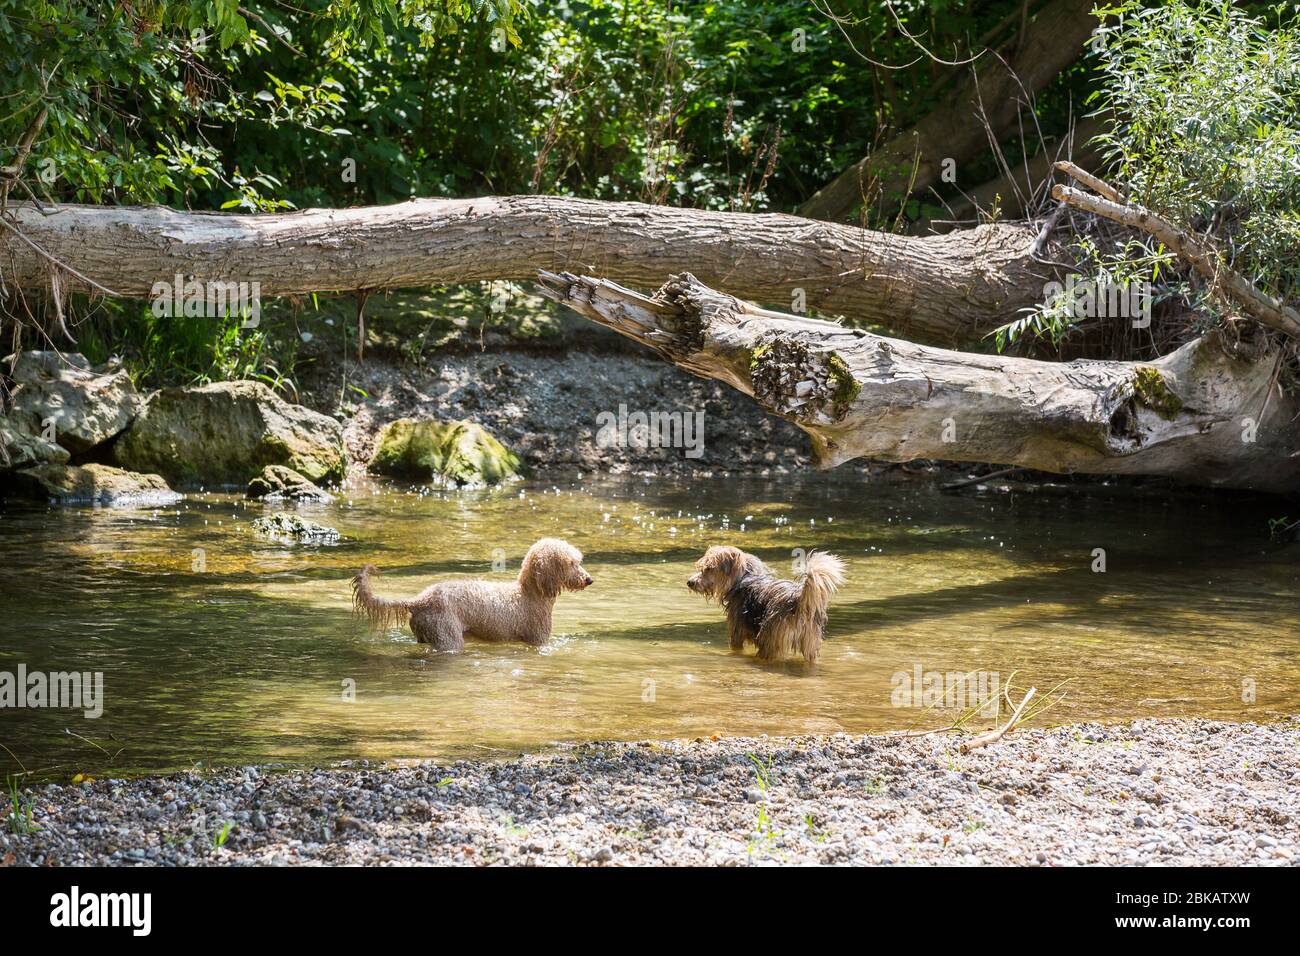 Deux chiens heureux un jeune terrier et un jeune coolé jouent dans l'eau et profitent de la rivière froide lors d'une chaude journée d'été, rivière Leitha, Autriche Banque D'Images